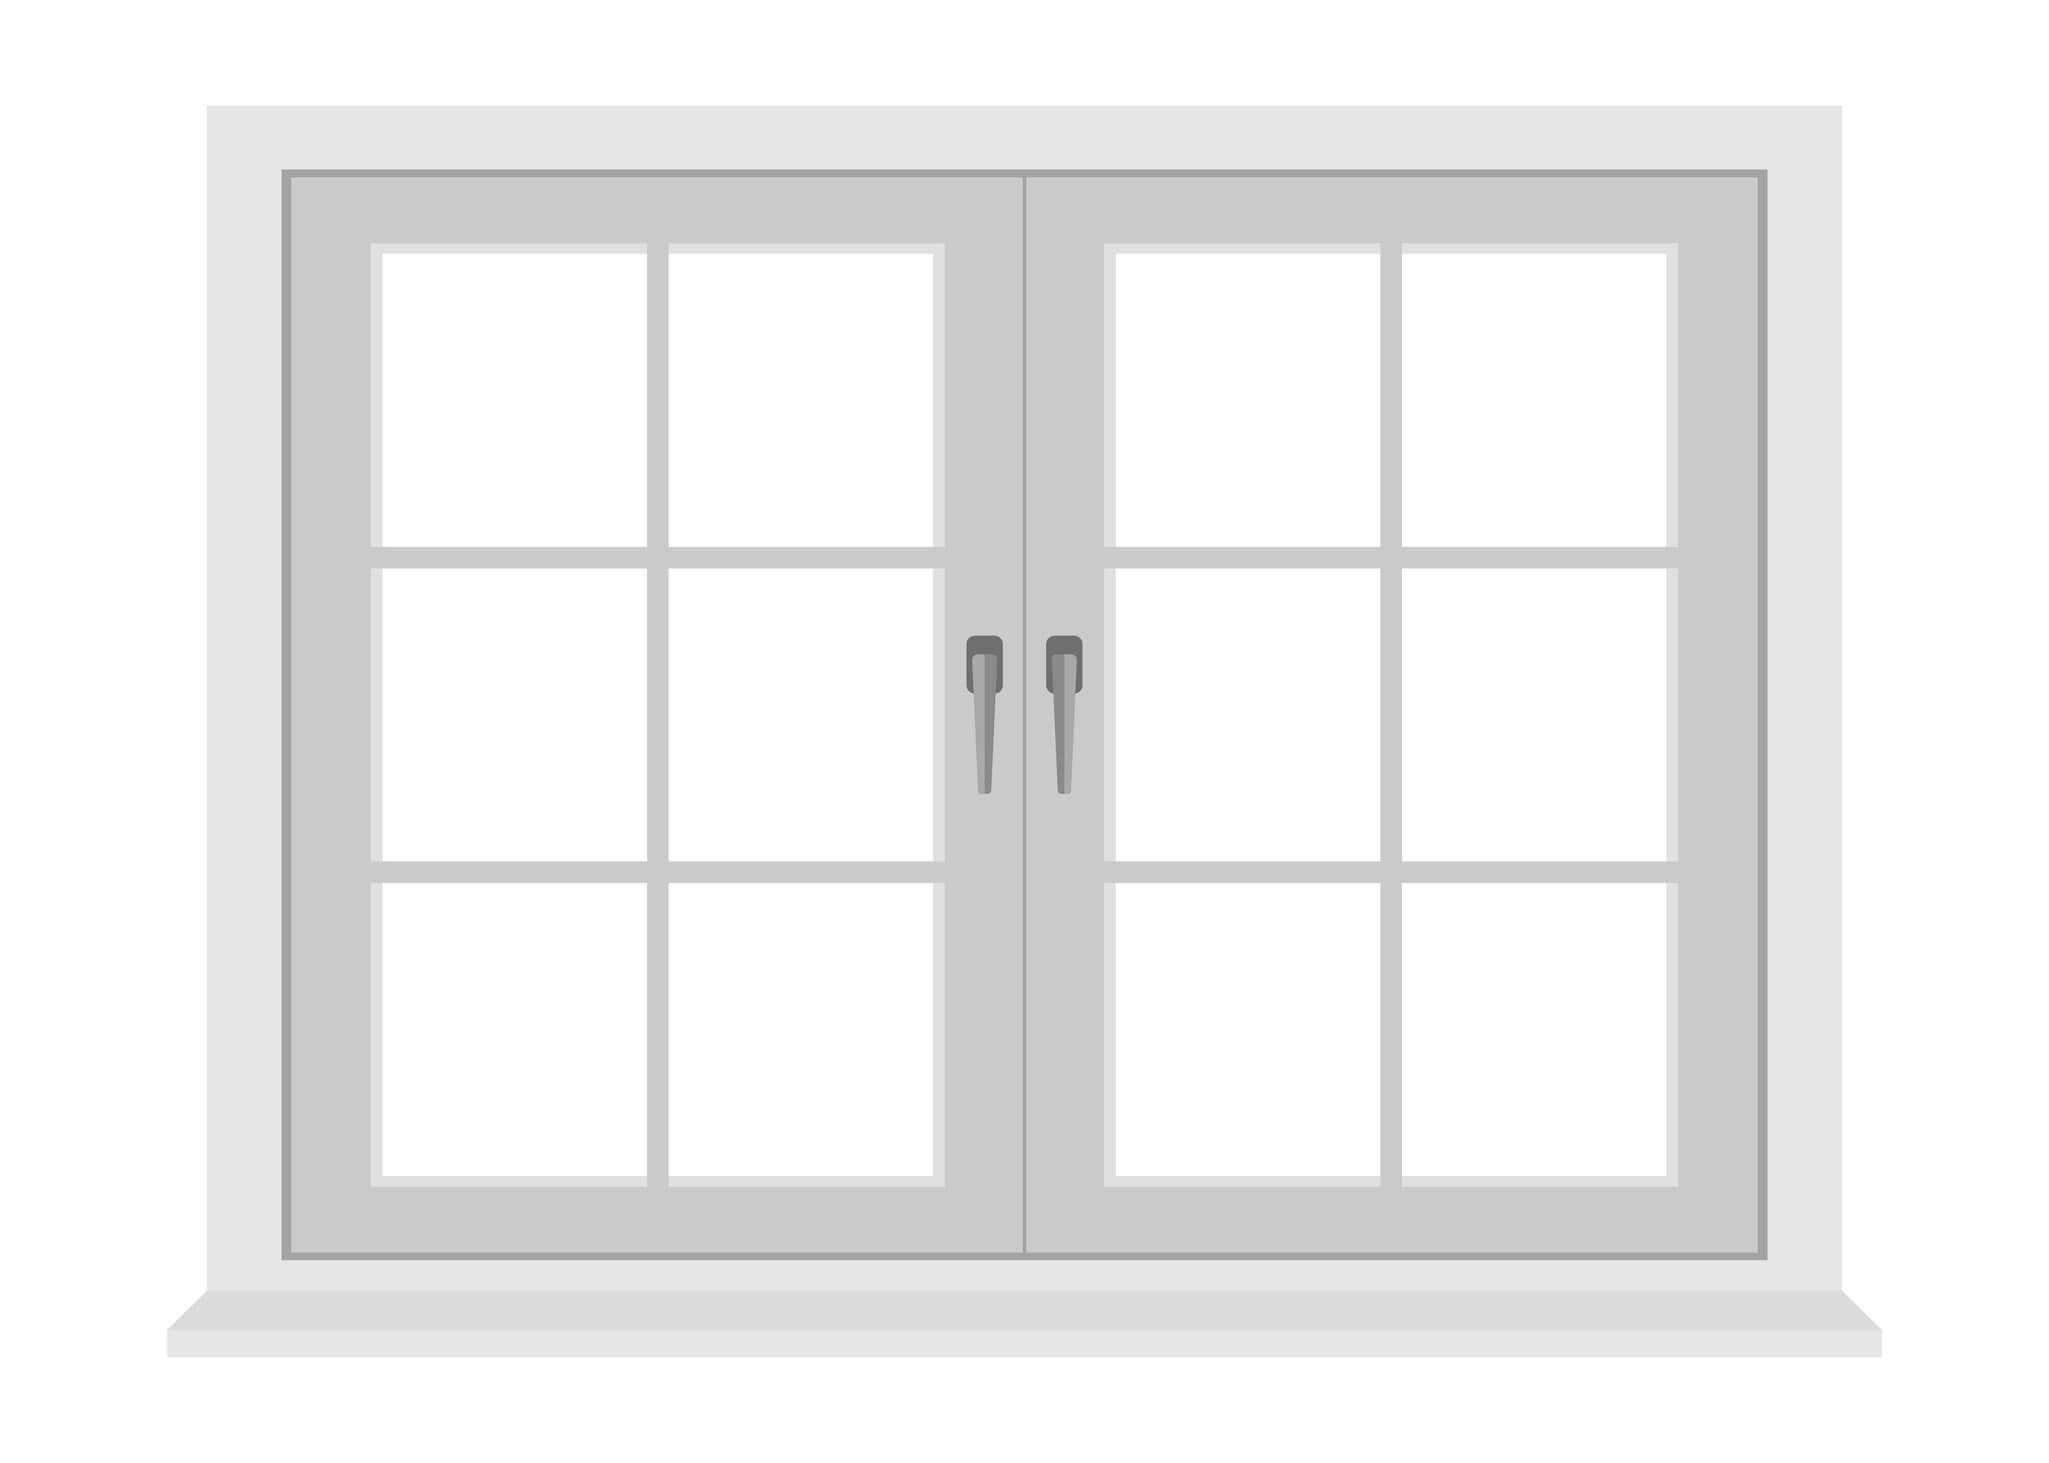 White window frame isolated on white background